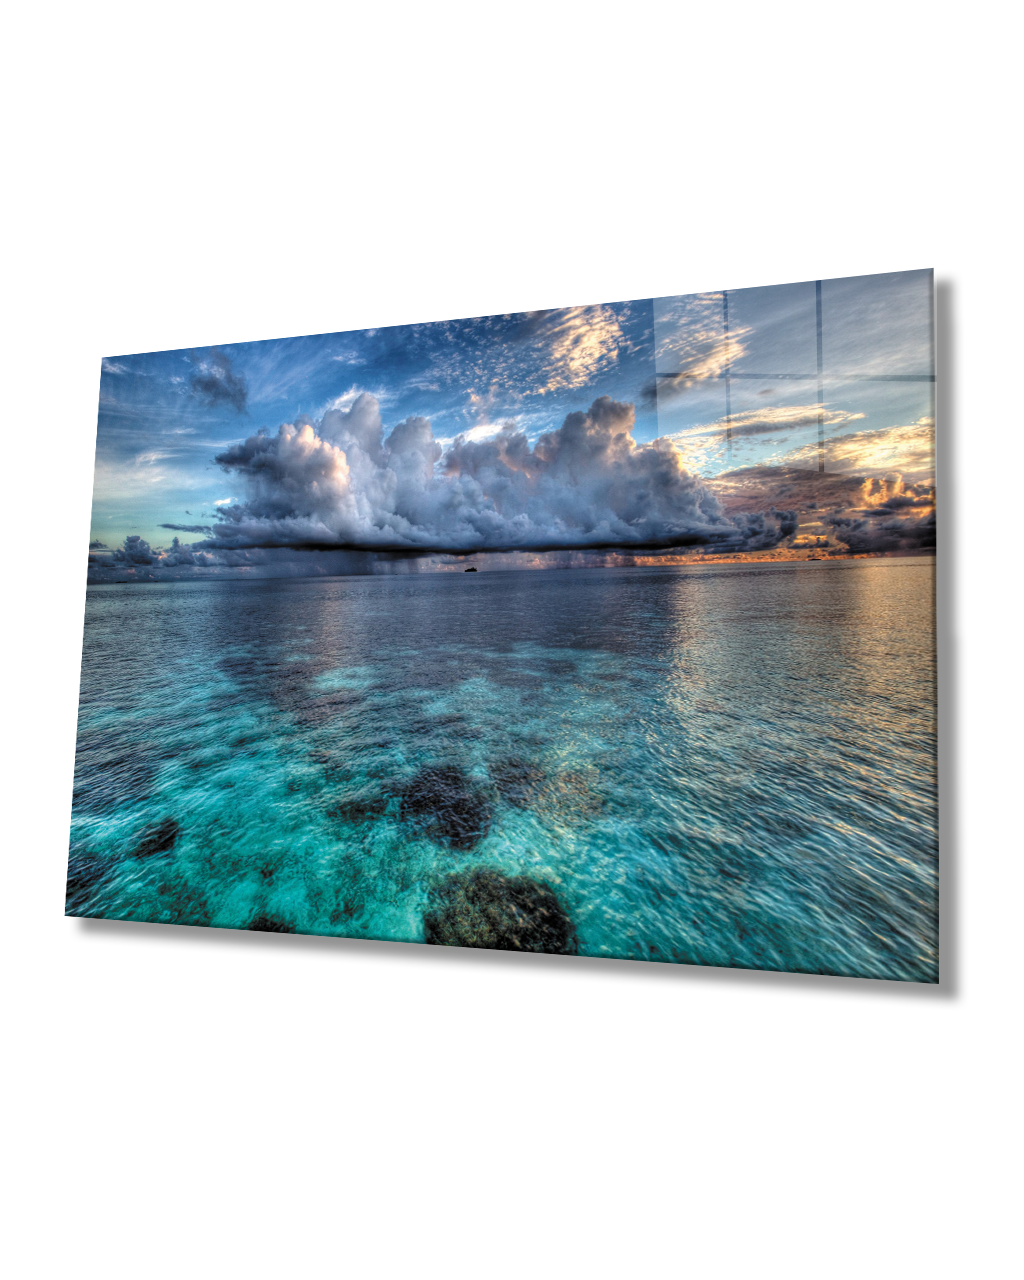 Gün Batımı Deniz Bulut Mavi Cam Tablo  4mm Dayanıklı Temperli Cam Sunset Sea Cloud Blue Glass Table 4mm Durable Tempered Glass